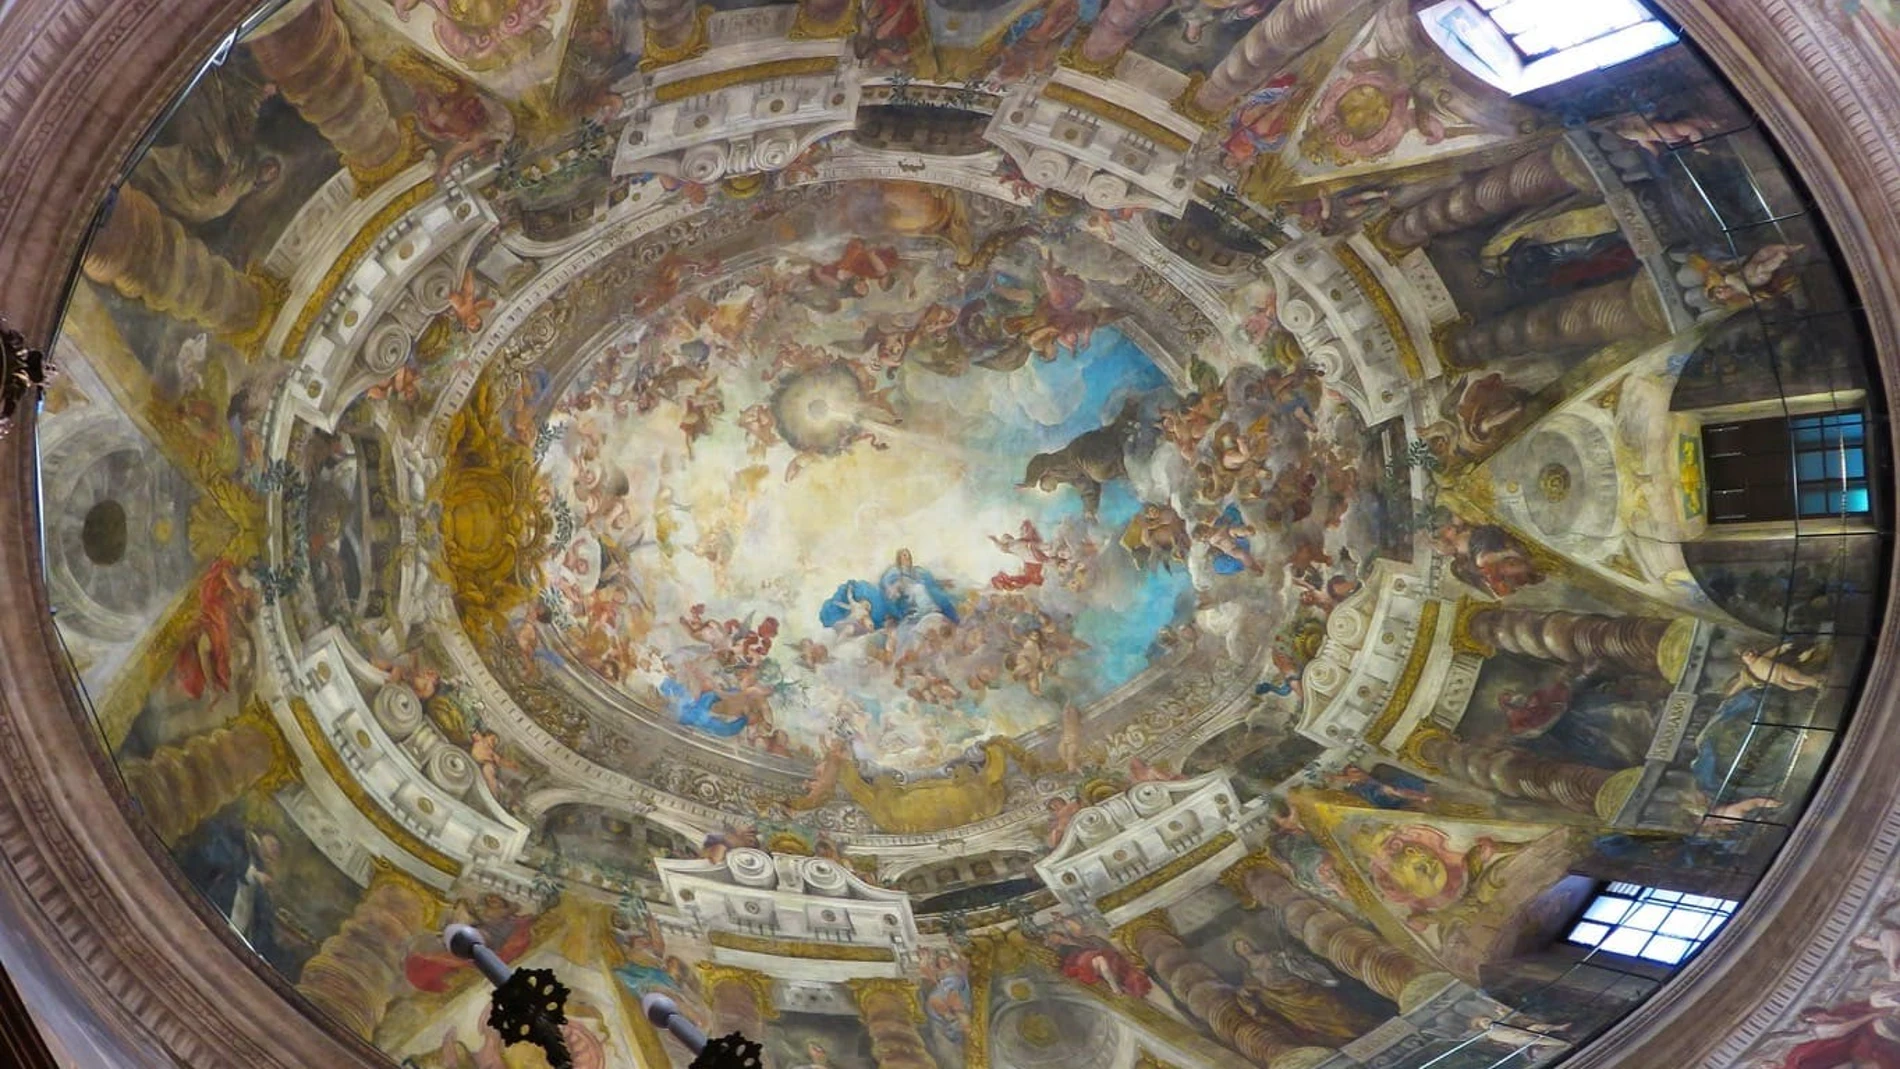 La Capilla Sixtina de Madrid: metros y metros de frescos barrocos a un paso de la Gran Vía en San Antonio de los Alemanes